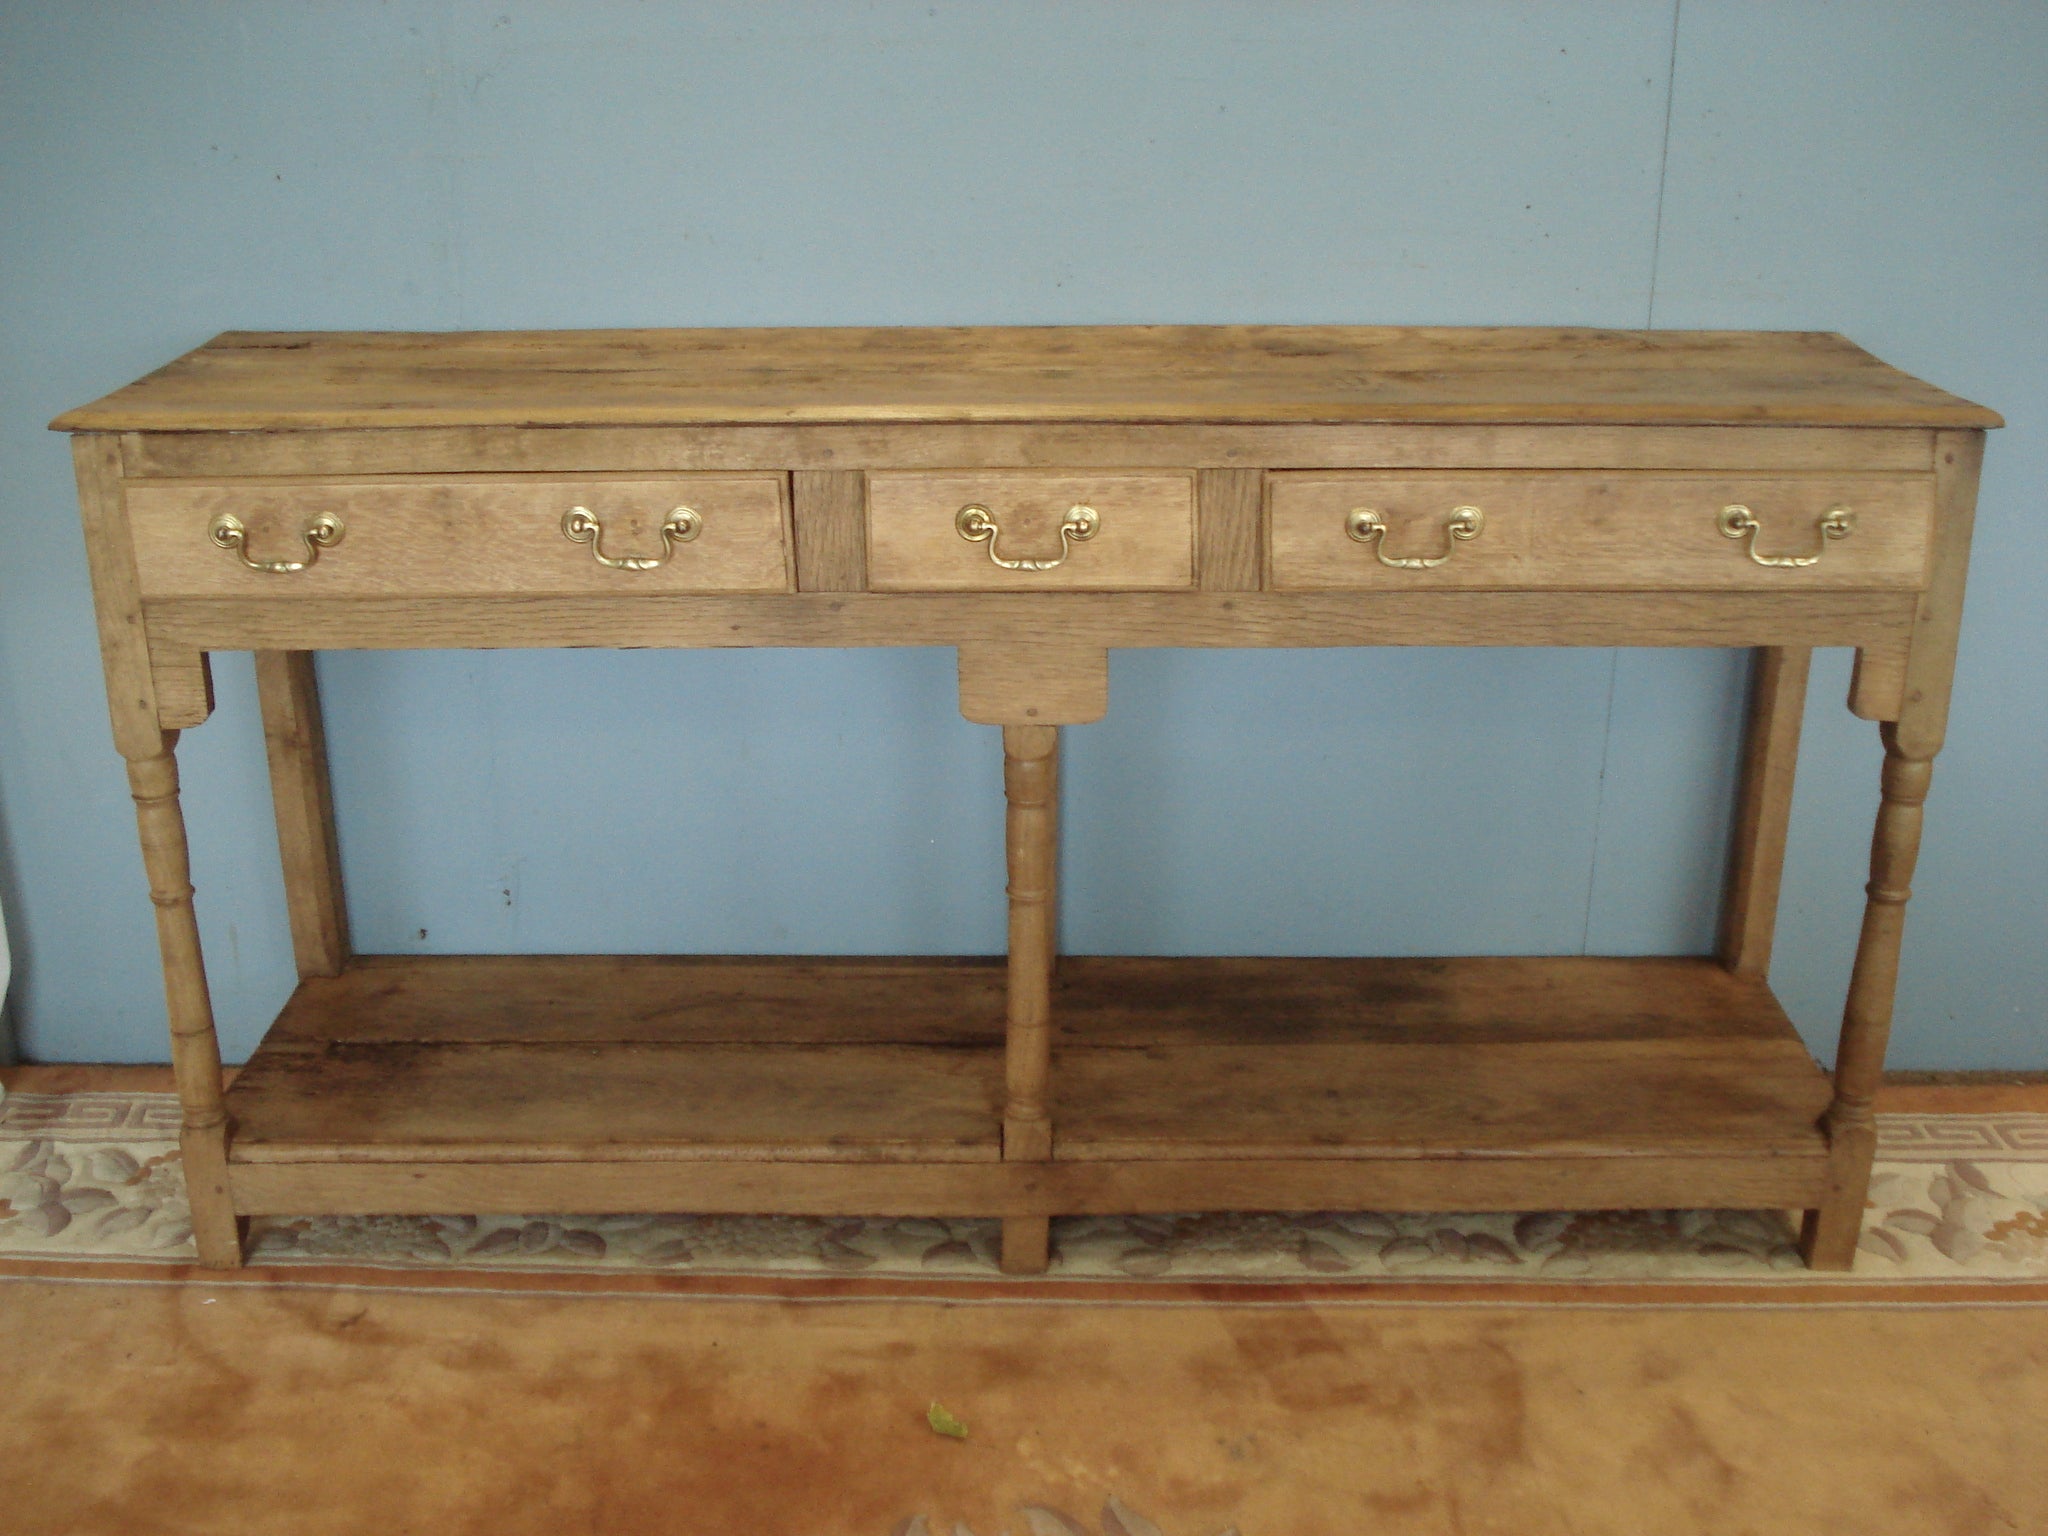 Early blonde oak potboard dresser base.